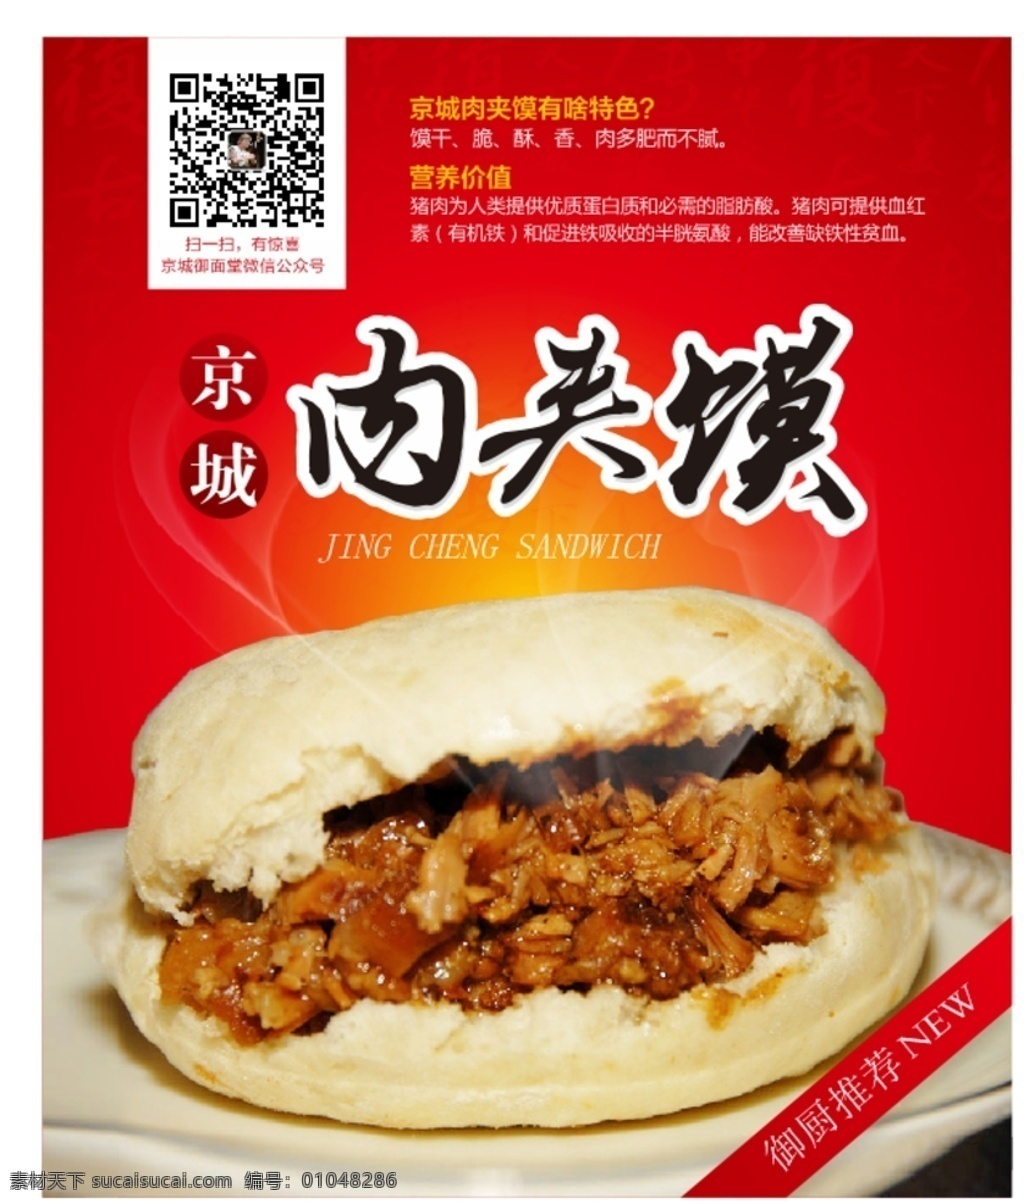 京城肉夹馍 红色背景 肉夹馍 美食 美食海报 肉夹馍海报 烟雾